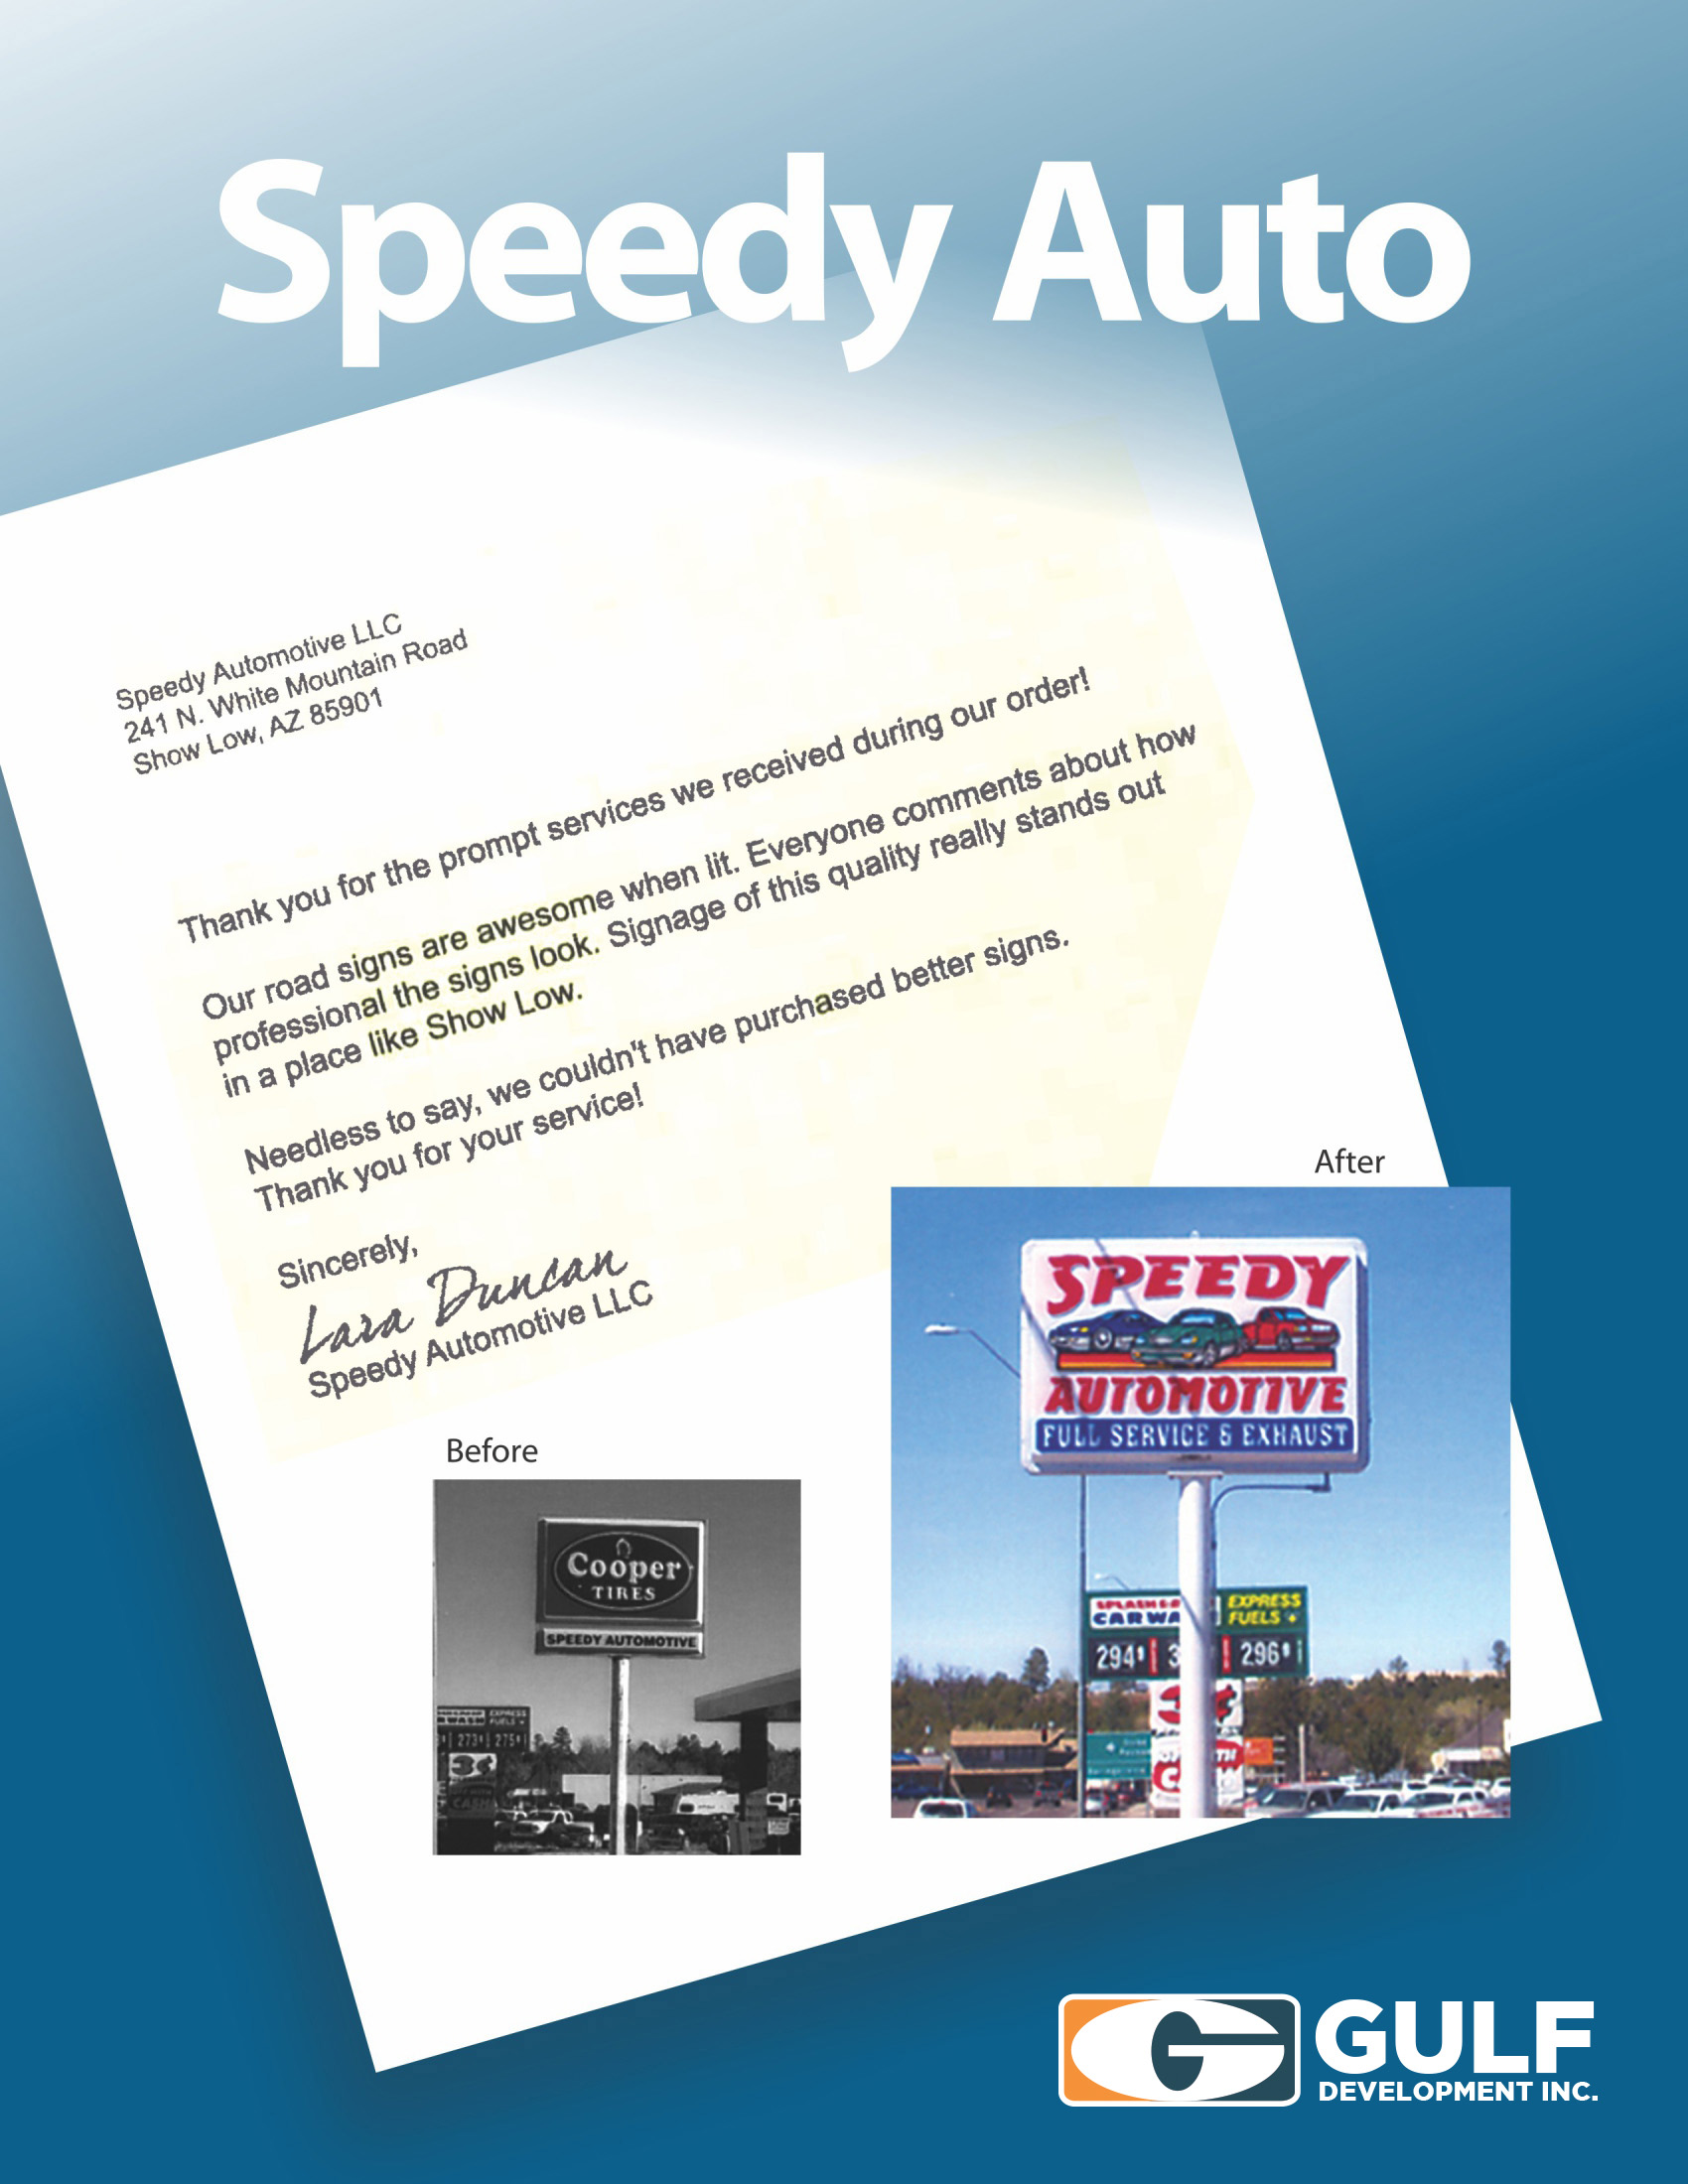 Speedy Auto Testimonial Letter